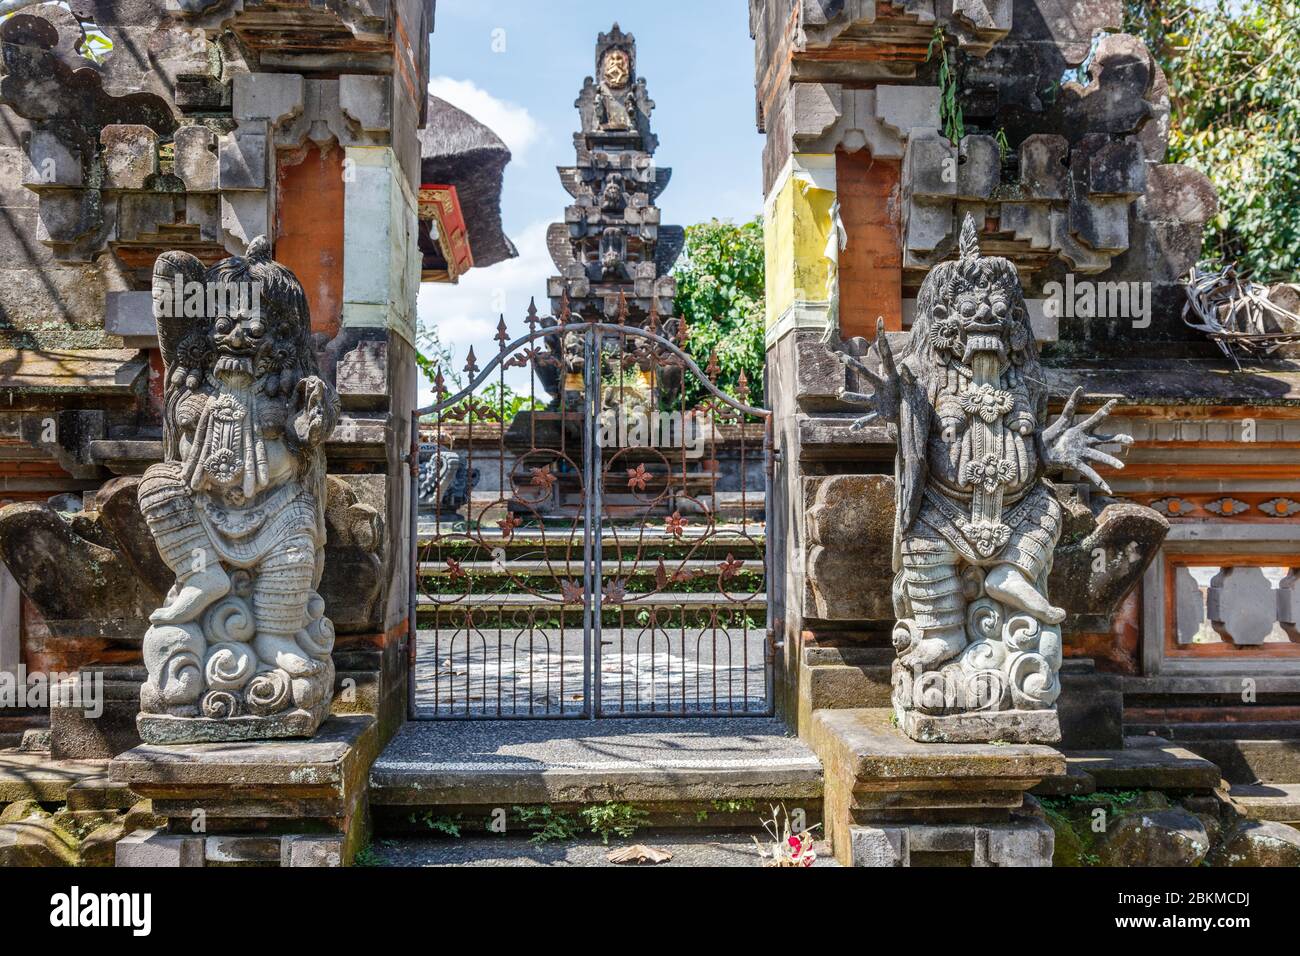 Ingresso indù balinese pura Dalem (Tempio dei morti) e una statua in pietra di Rangda. Altare Padmasana sullo sfondo. Gianyar, Bali, Indonesia. Foto Stock